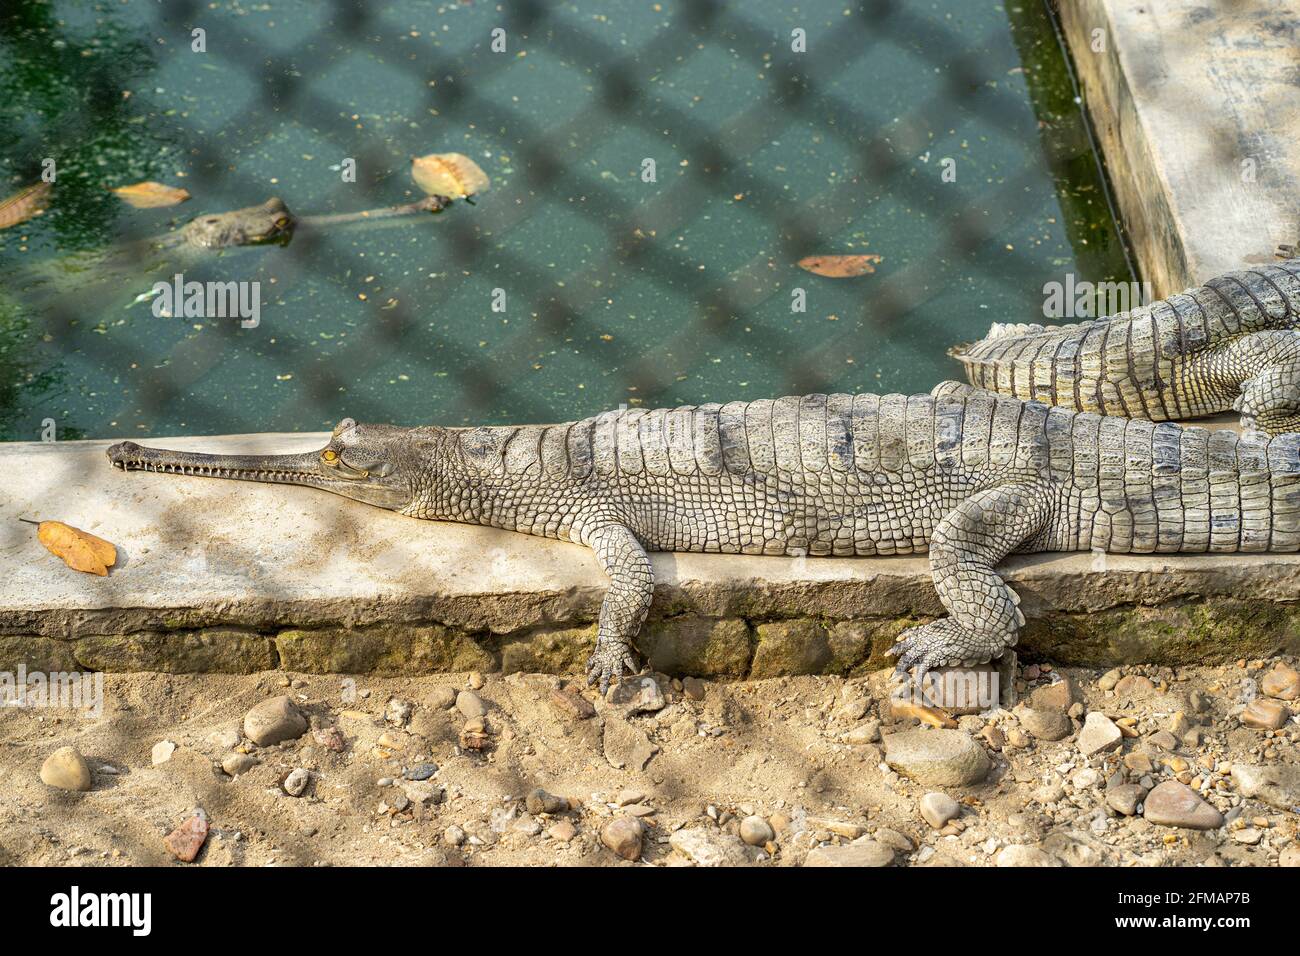 Écloserie de Gharial / Gavial (crocodile), parc national de Chitwan, district de Chitwan, province de Bagmati, Népal Banque D'Images